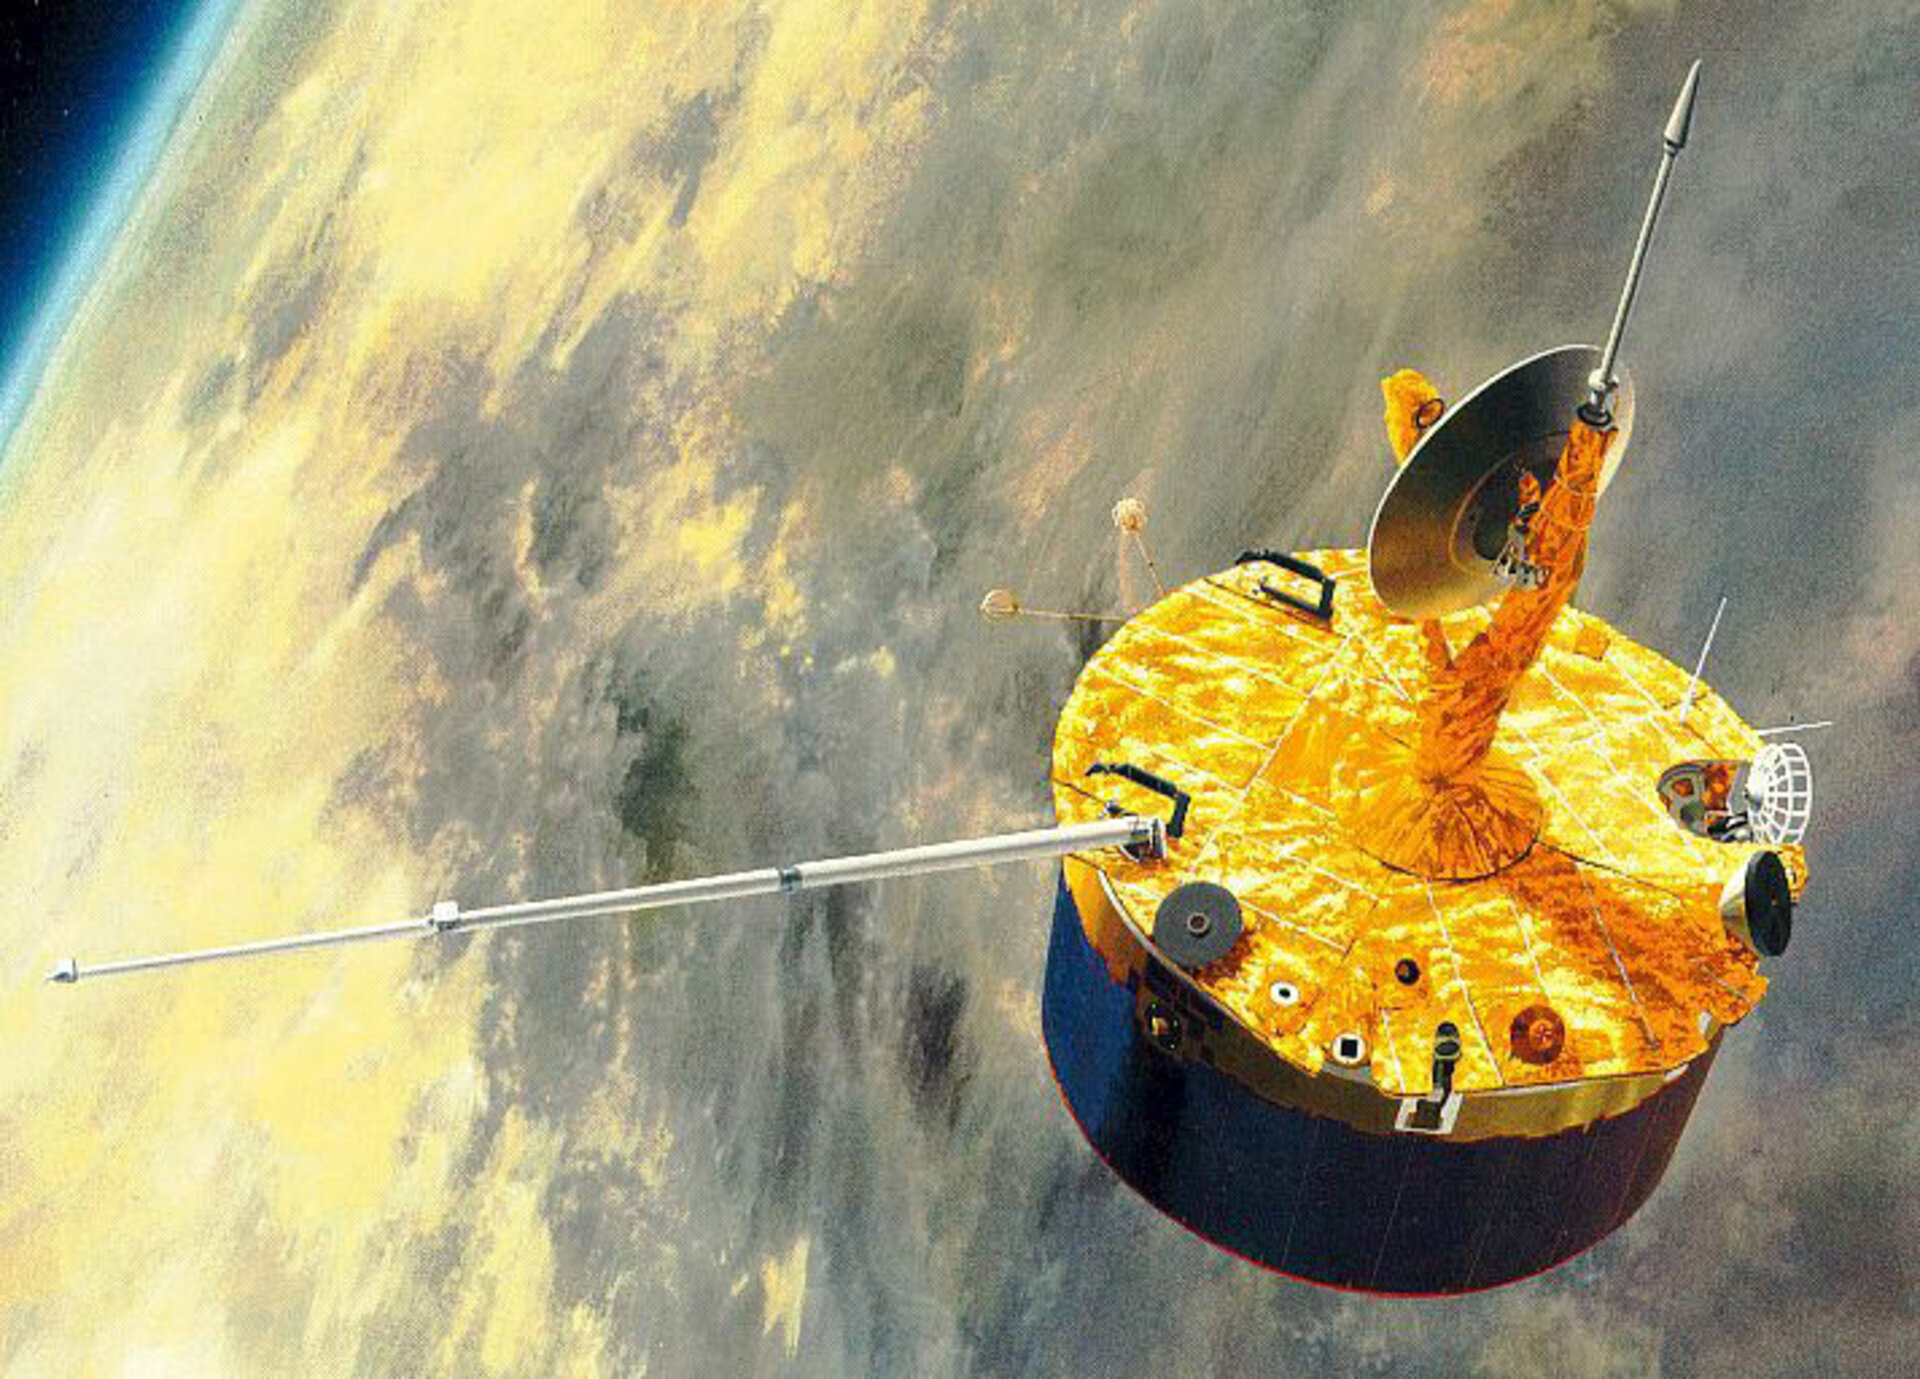 The Pioneer Venus spacecraft